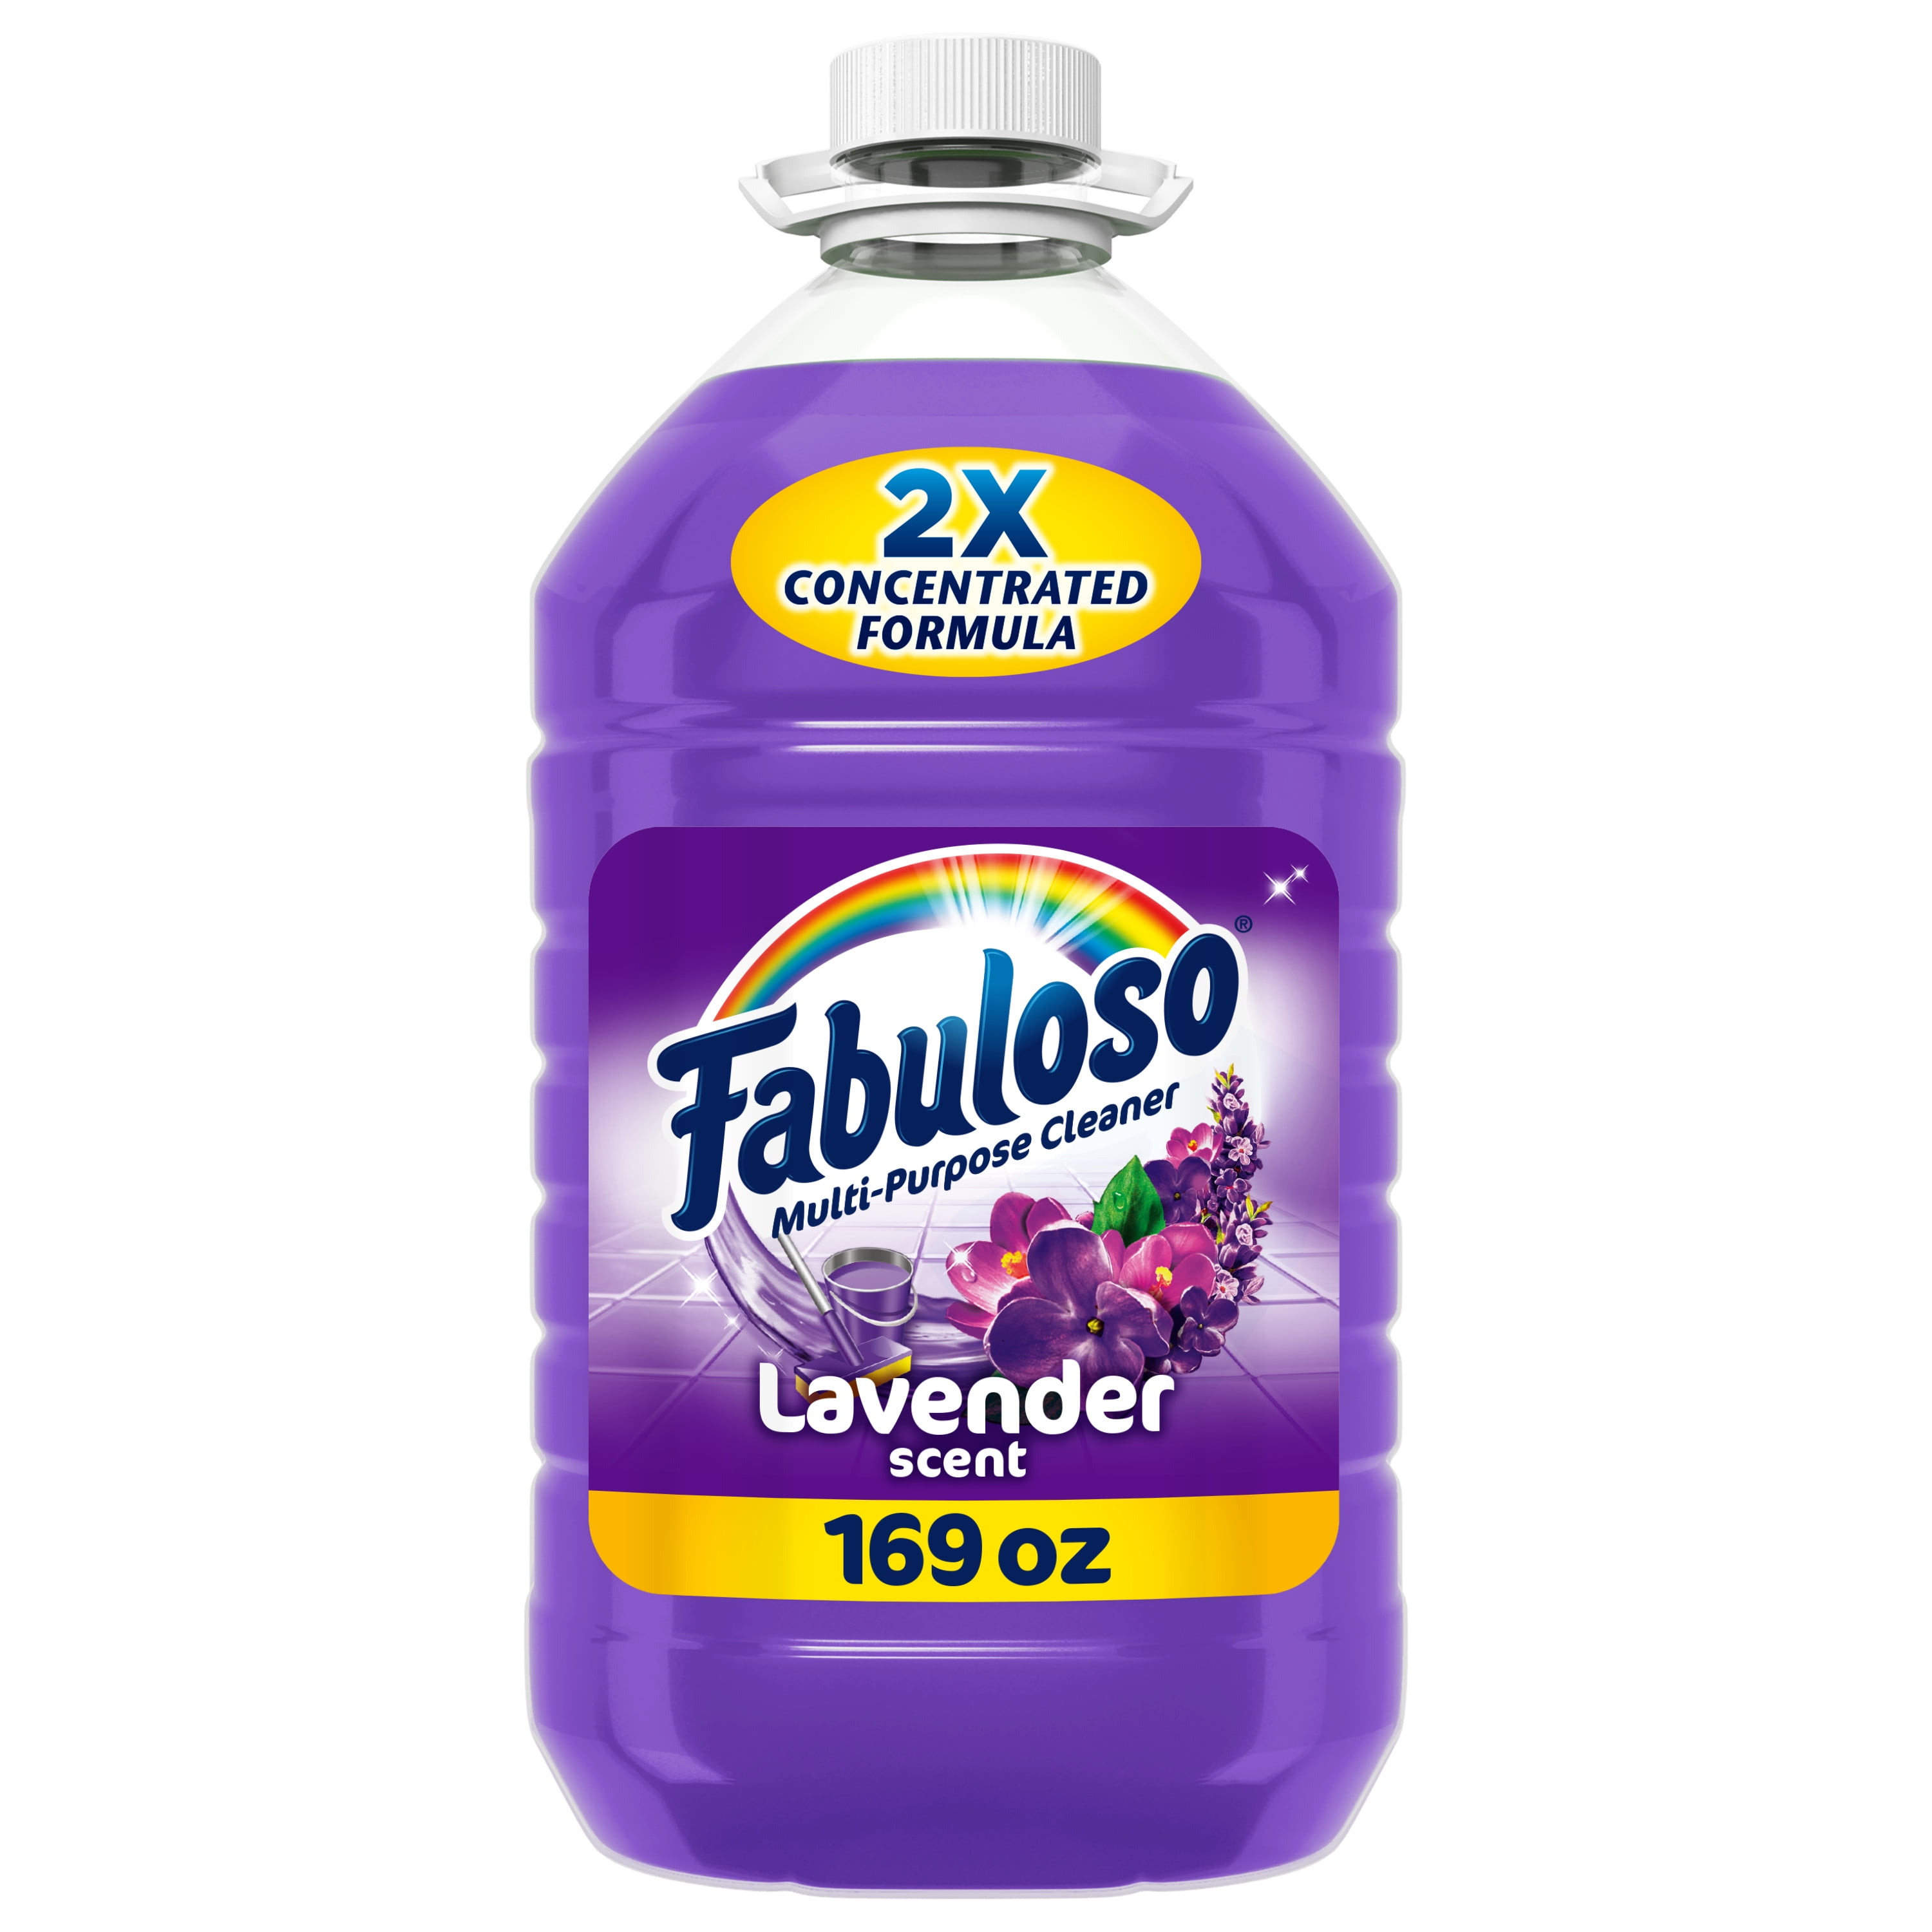 Fabuloso Multi-Purpose Cleaner, 2X Concentrated Formula, Lavender Scent, 169 fl oz